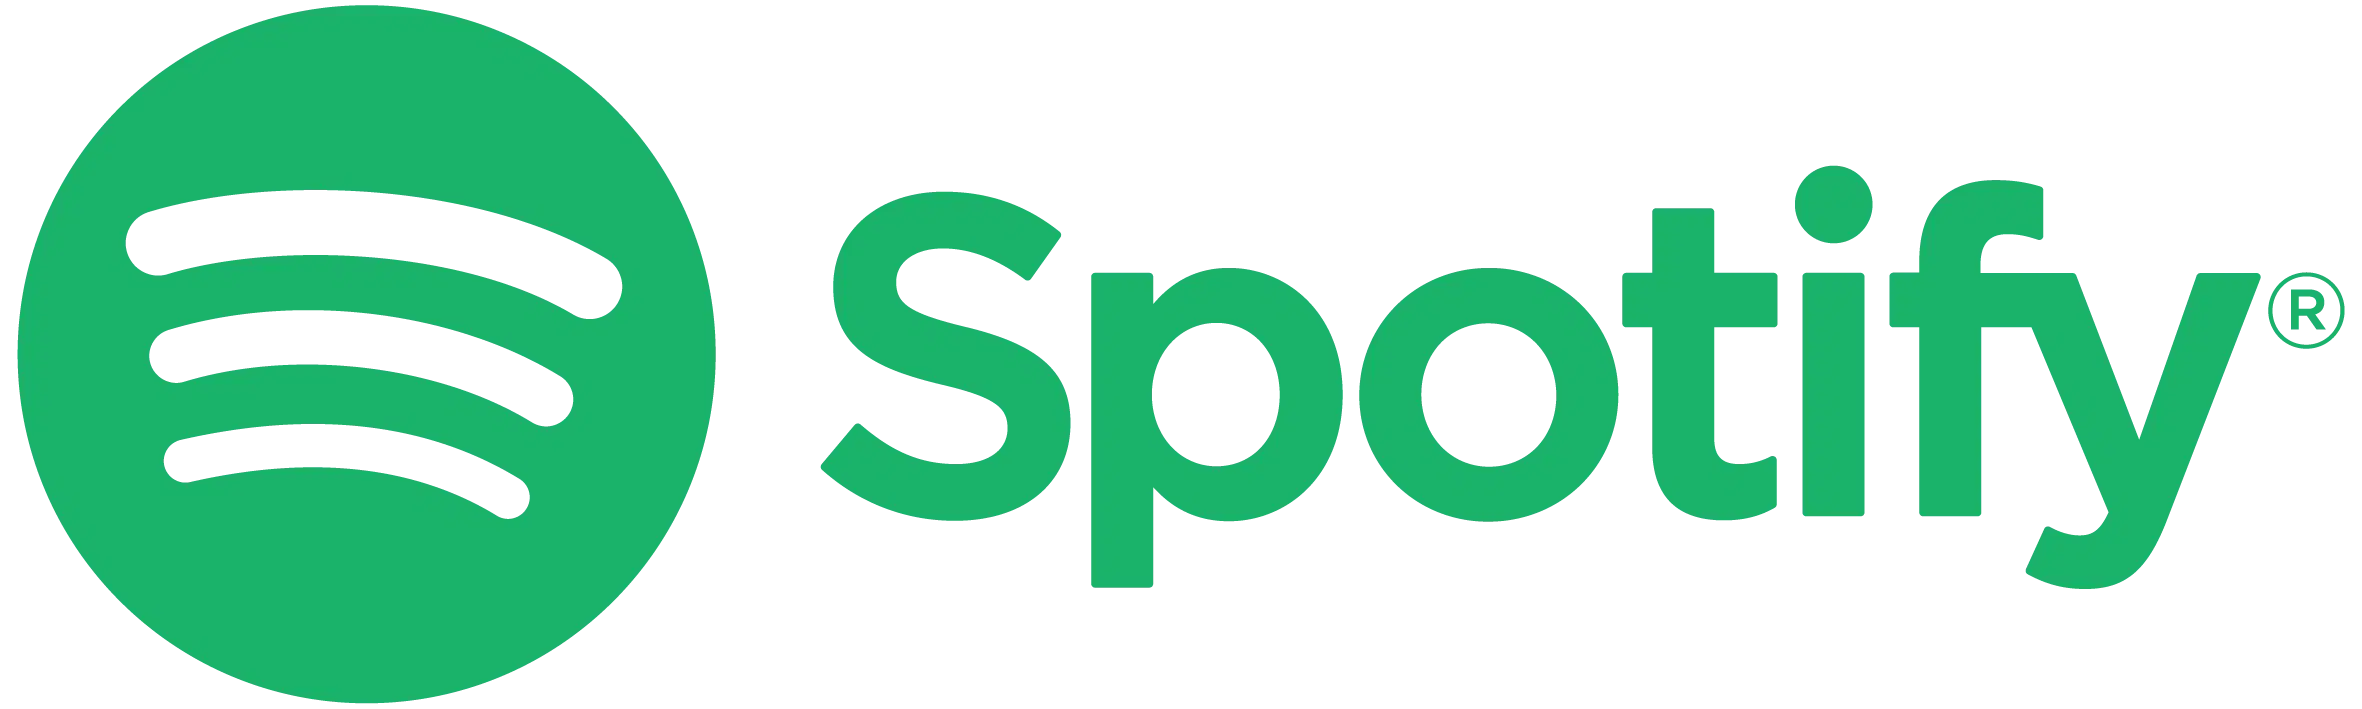 Spotify_Logo_CMYK_Green.png